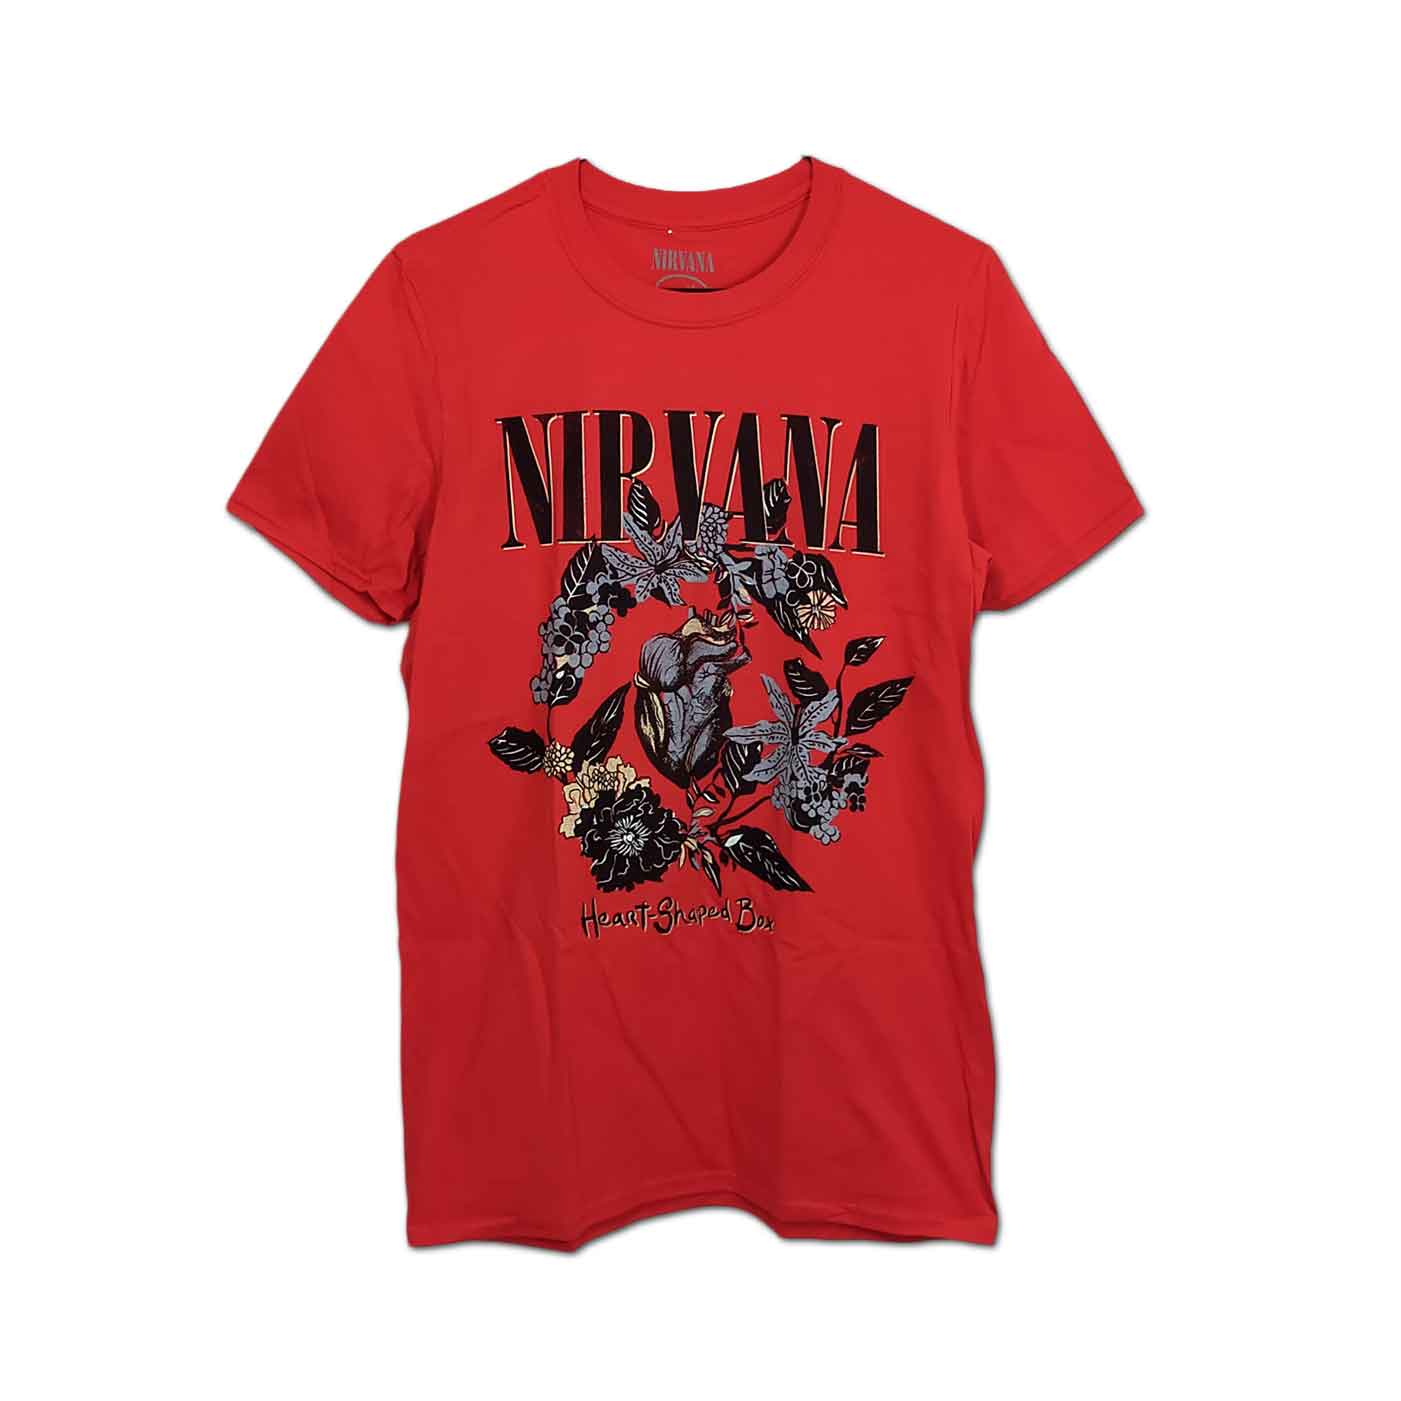 Nirvana バンドTシャツ ニルヴァーナ Heart Shaped Box RED - バンドT 